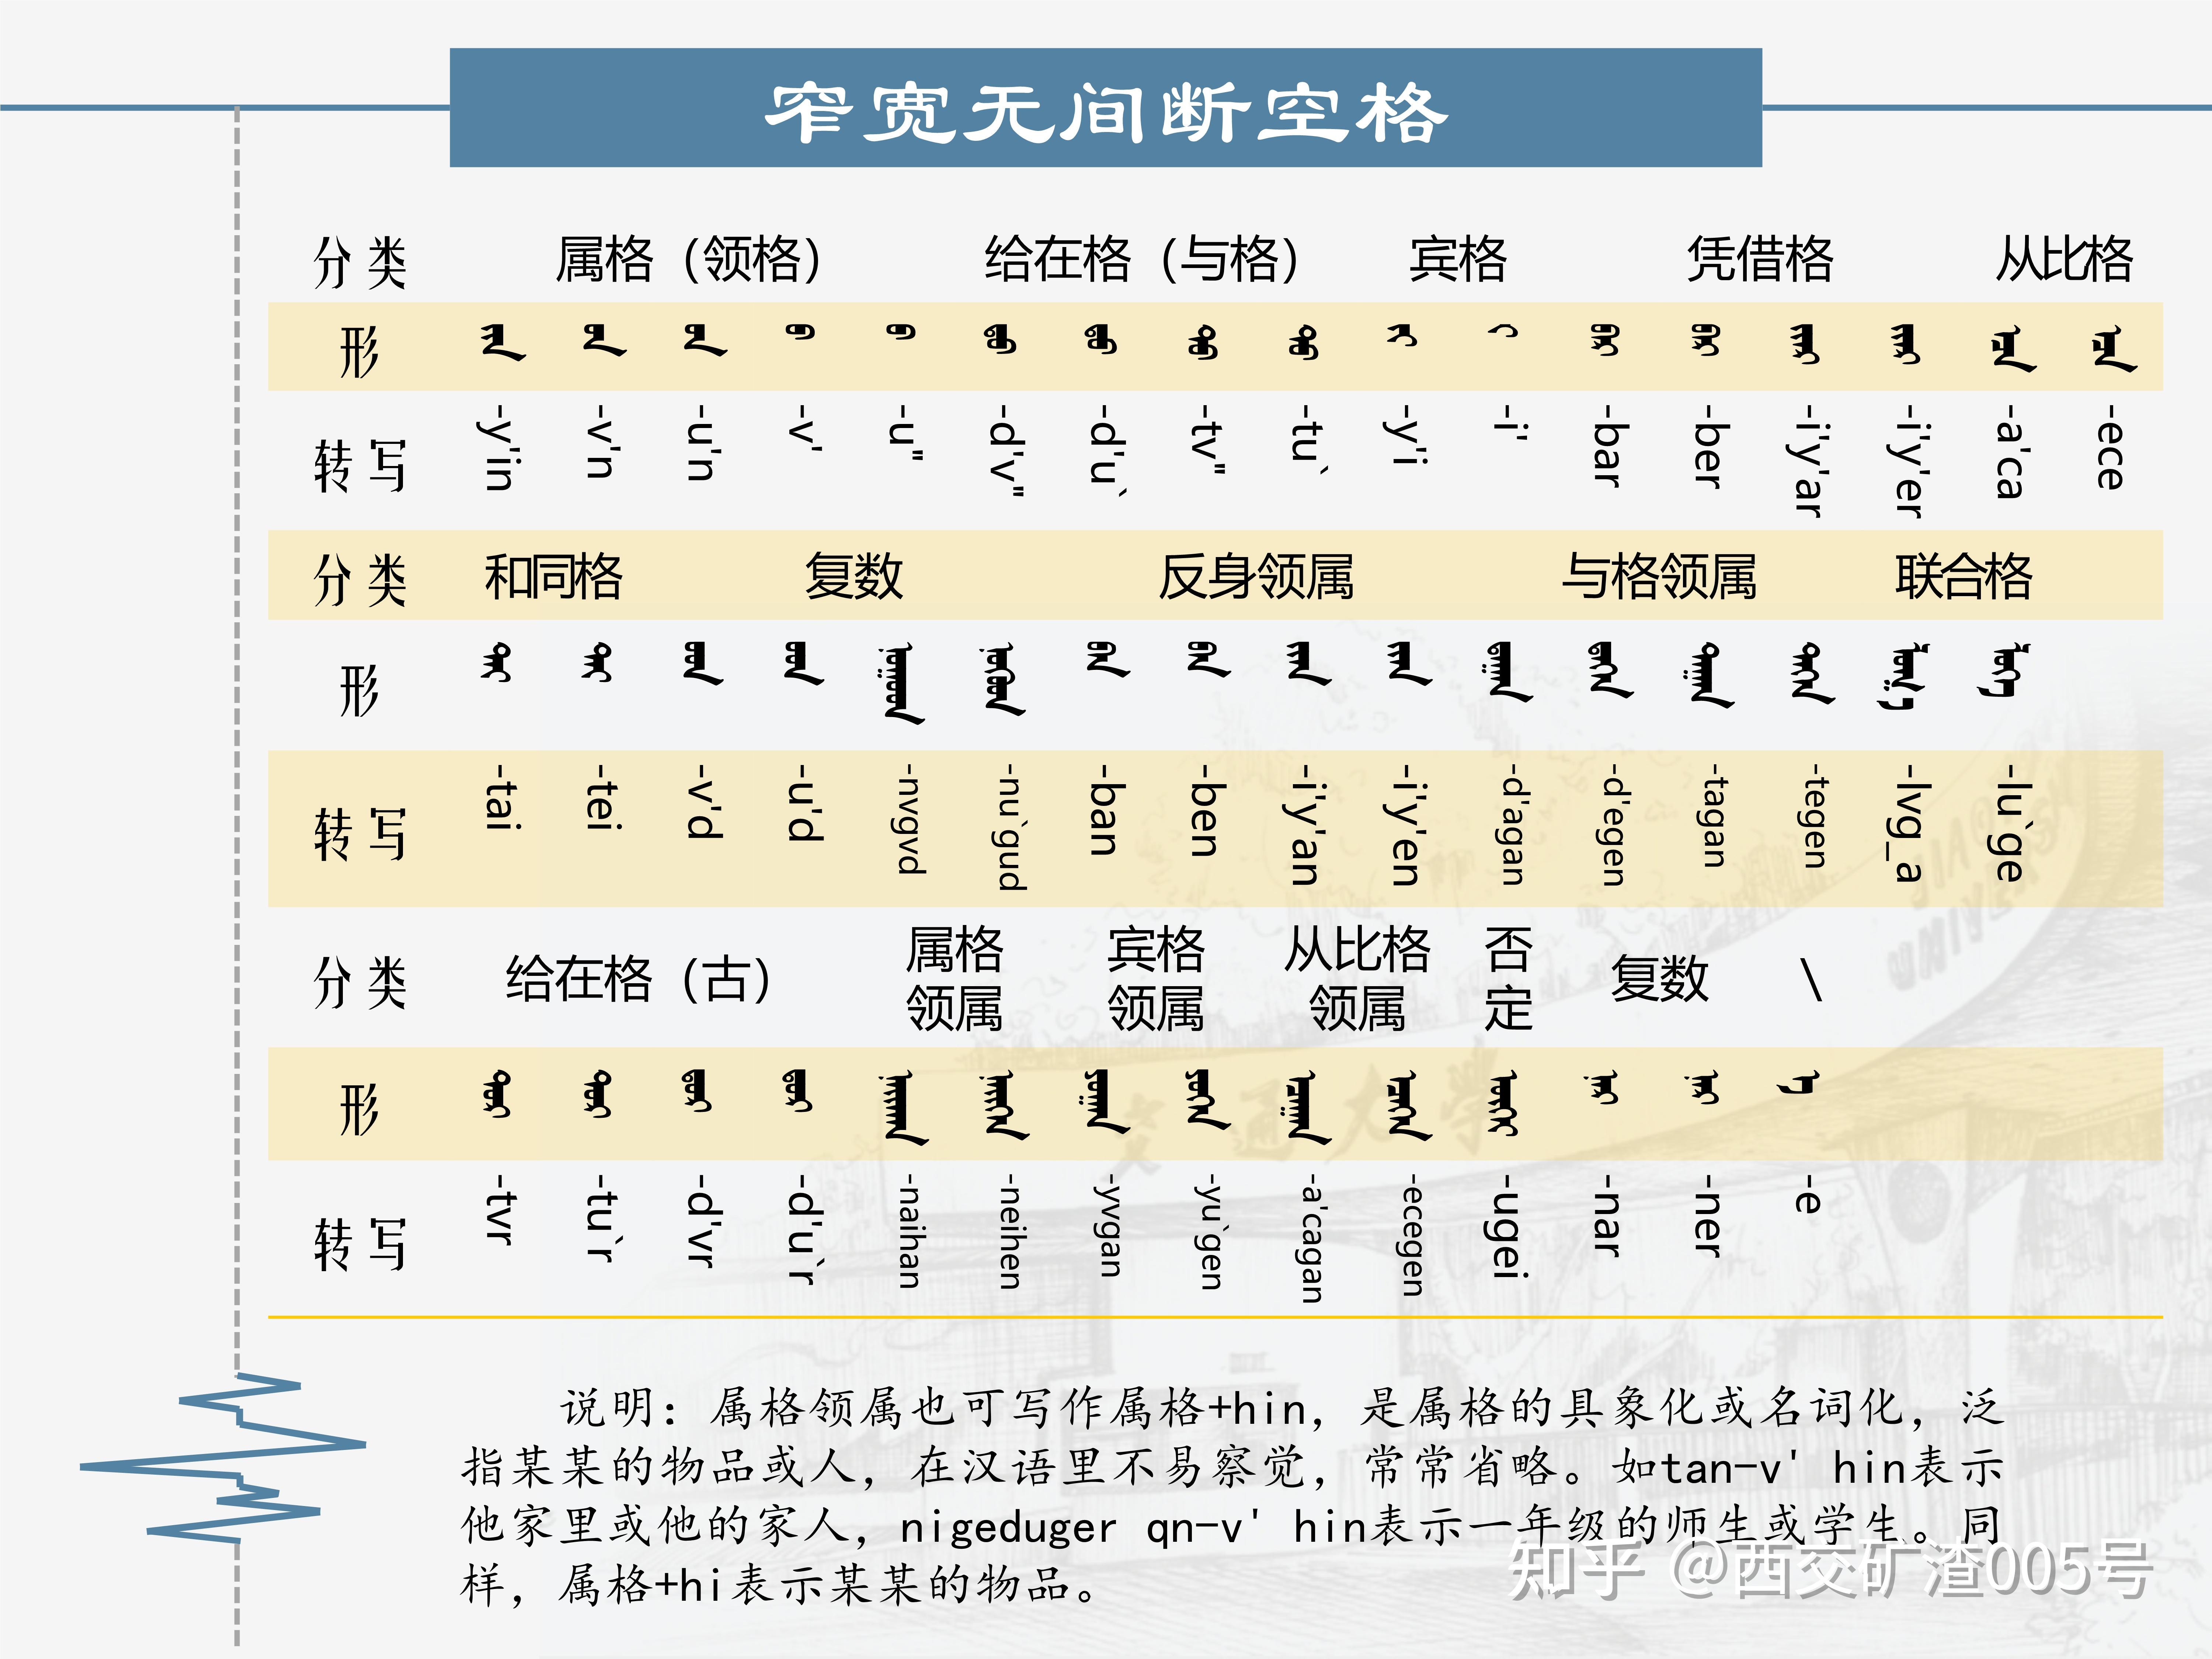 蒙古文标准编码及其拉丁转写 